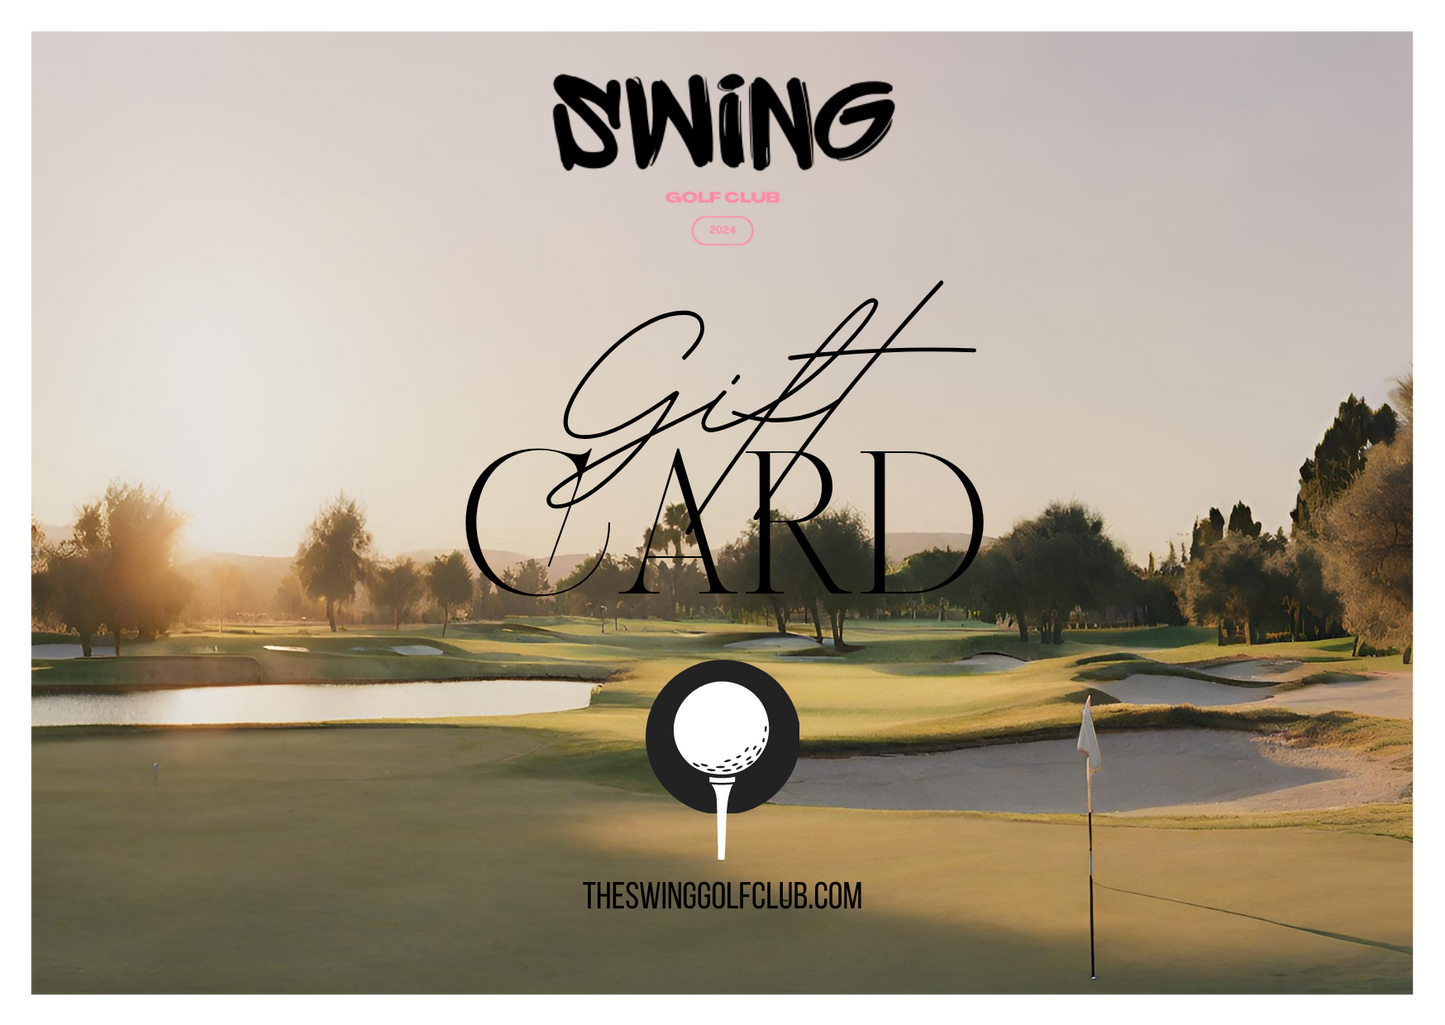 Swing Golf Club Gift Card